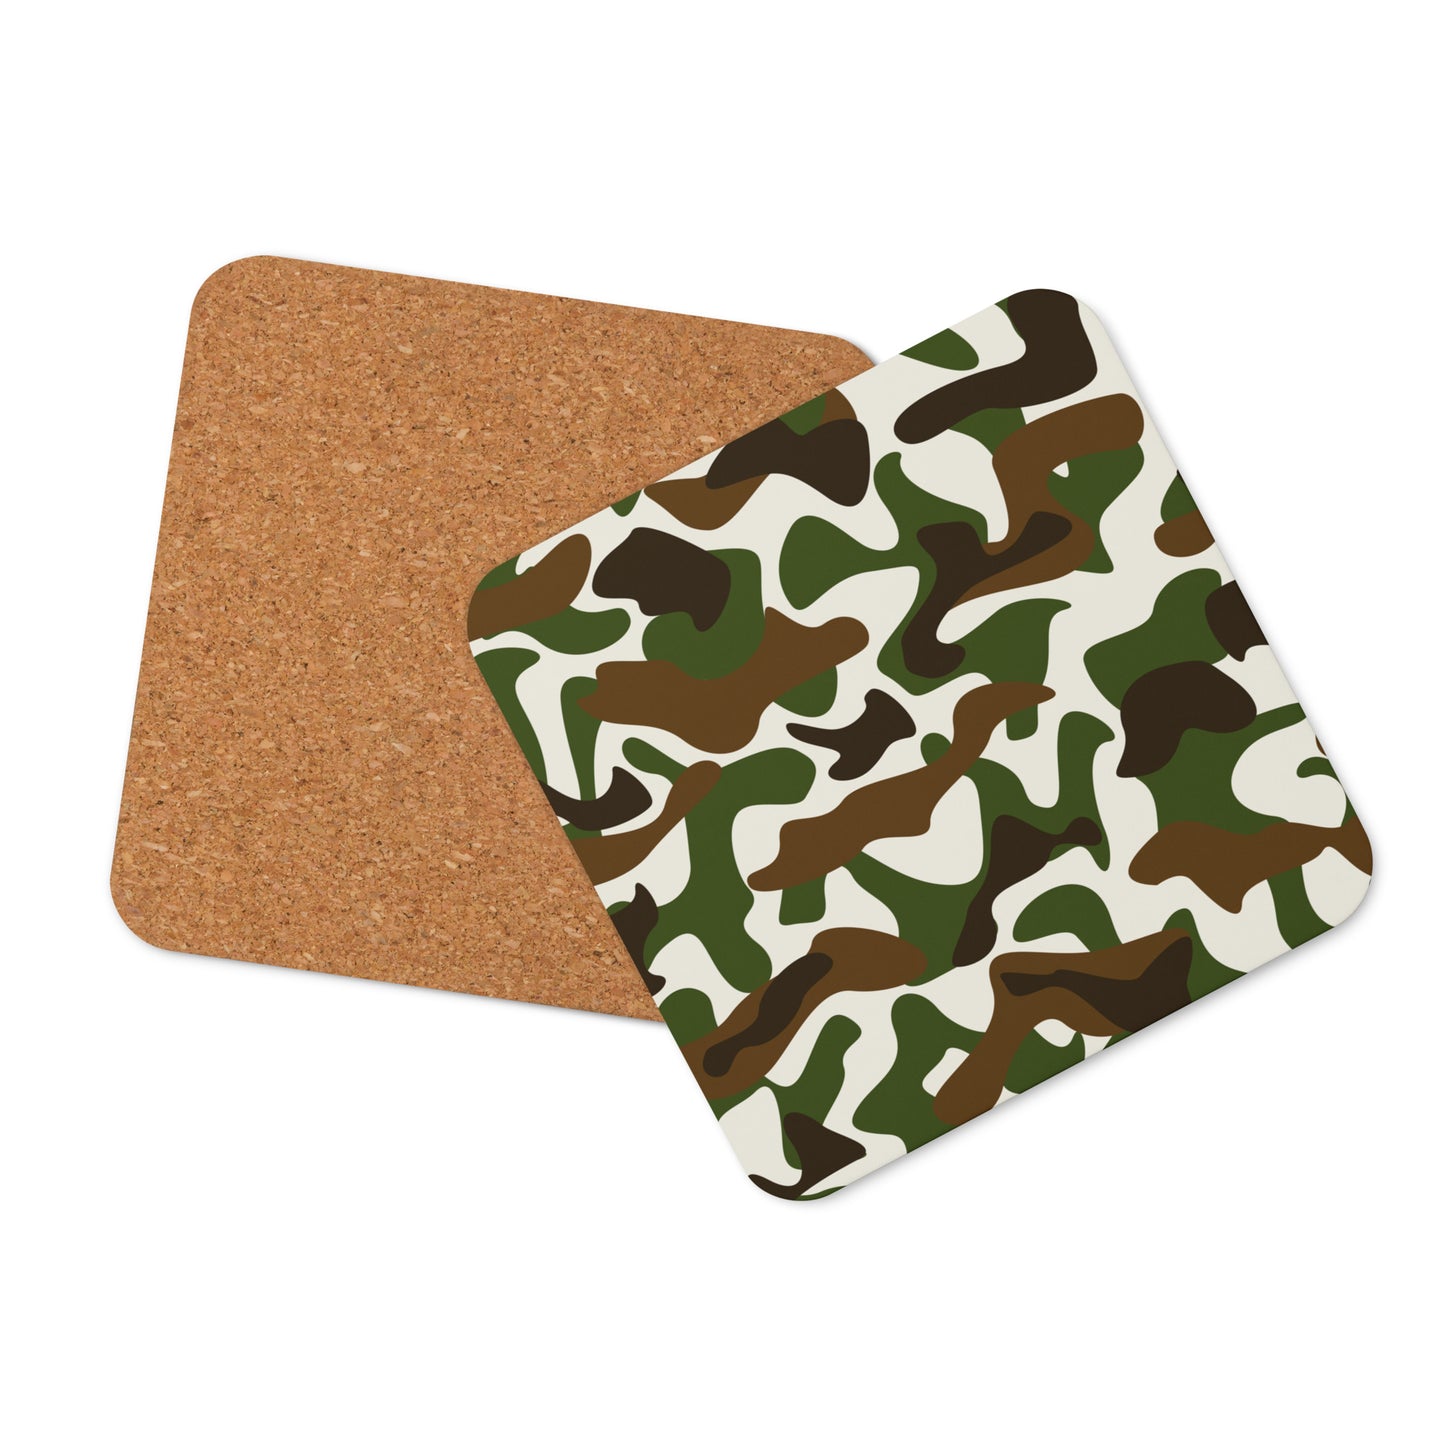 Cork-back coaster - Camouflage